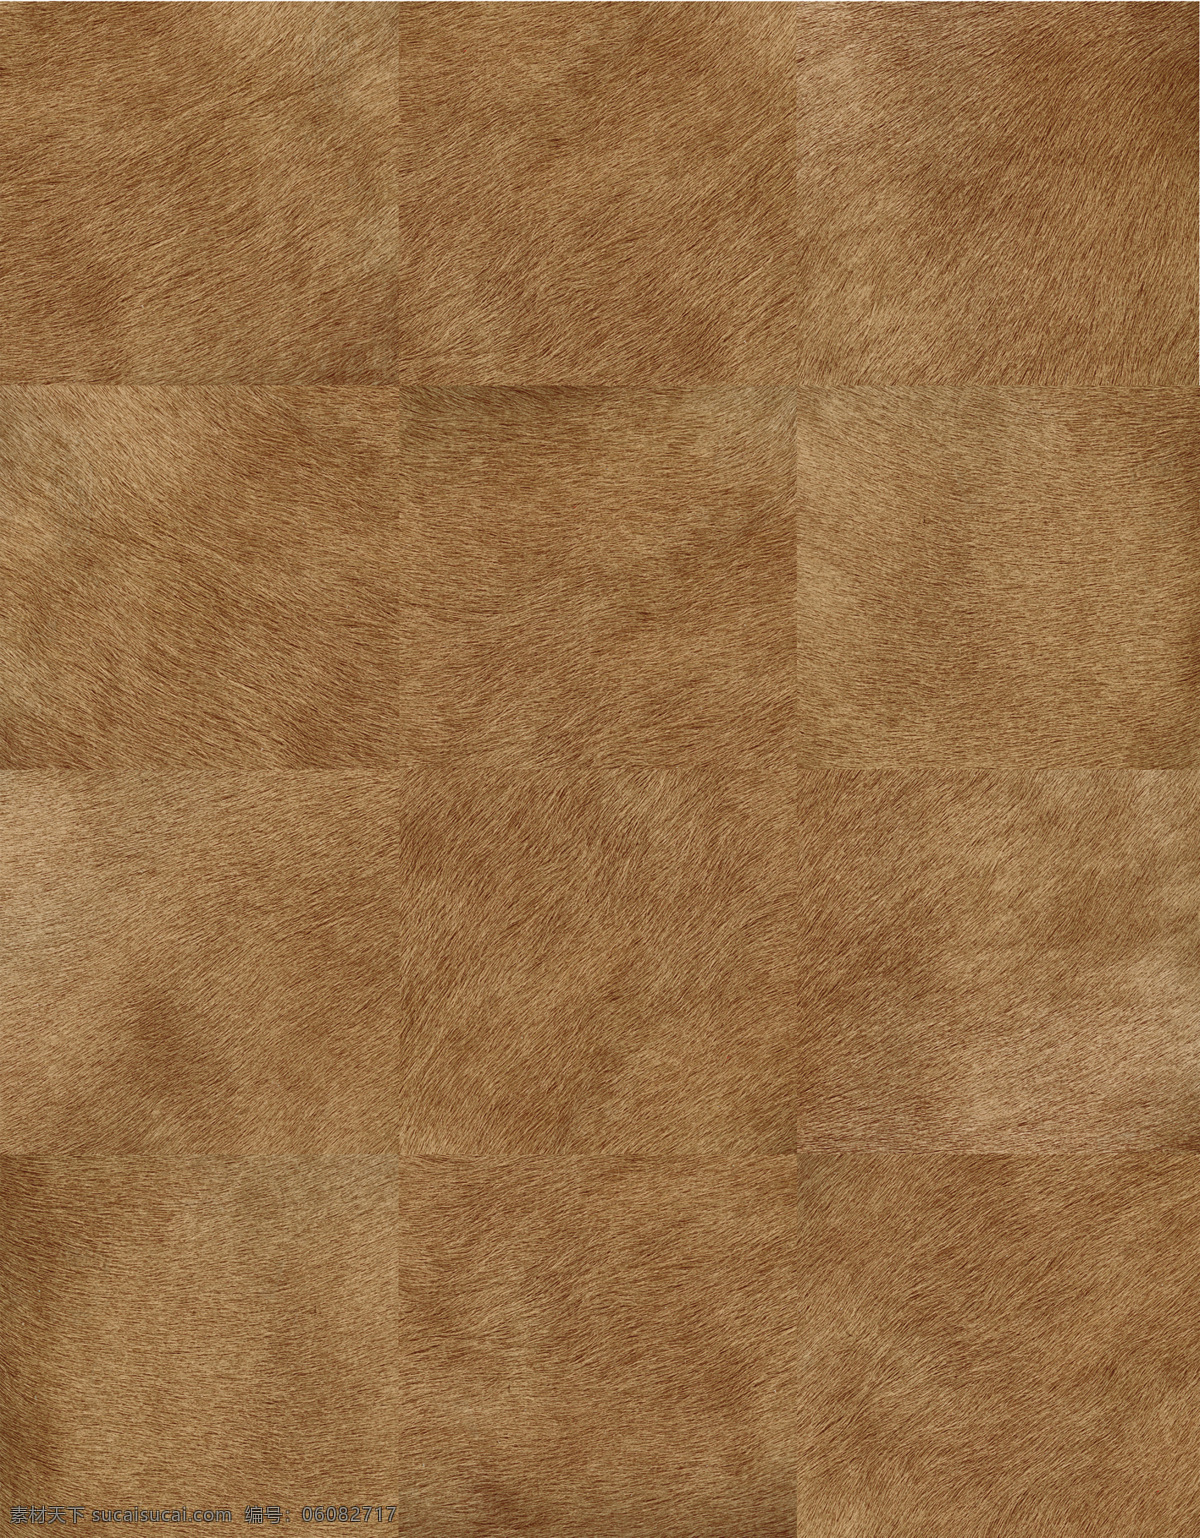 地毯贴图素材 3d材质贴图 浅褐色 系 地毯 材质 贴图 纹理 地毯贴图下载